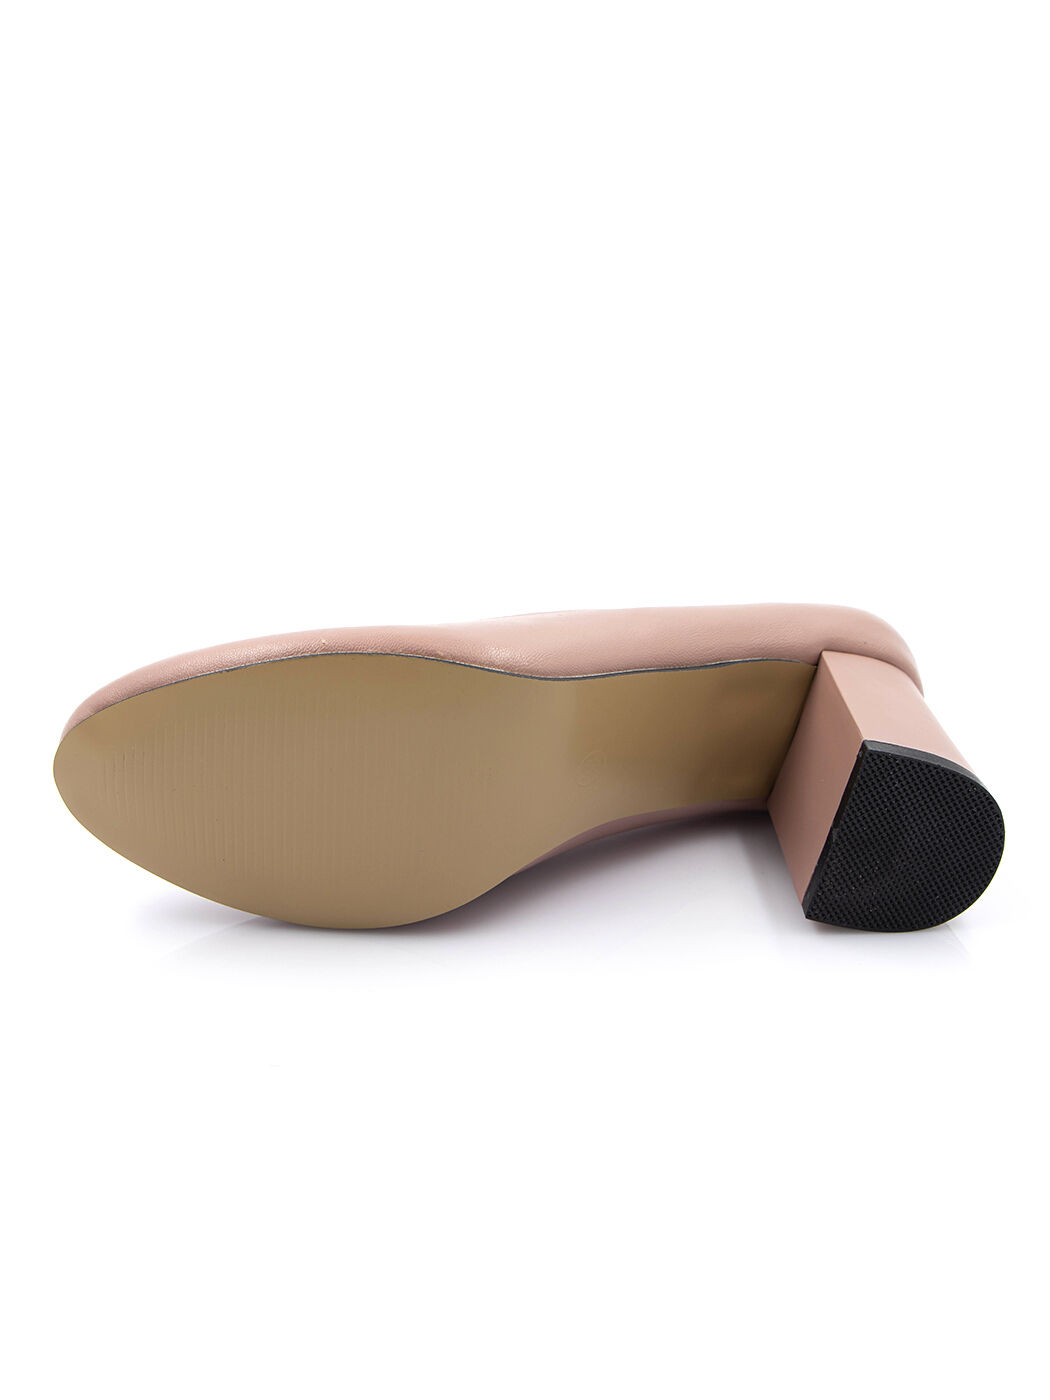 Туфли женские розовые экокожа каблук устойчивый демисезон от производителя 5M вид 2